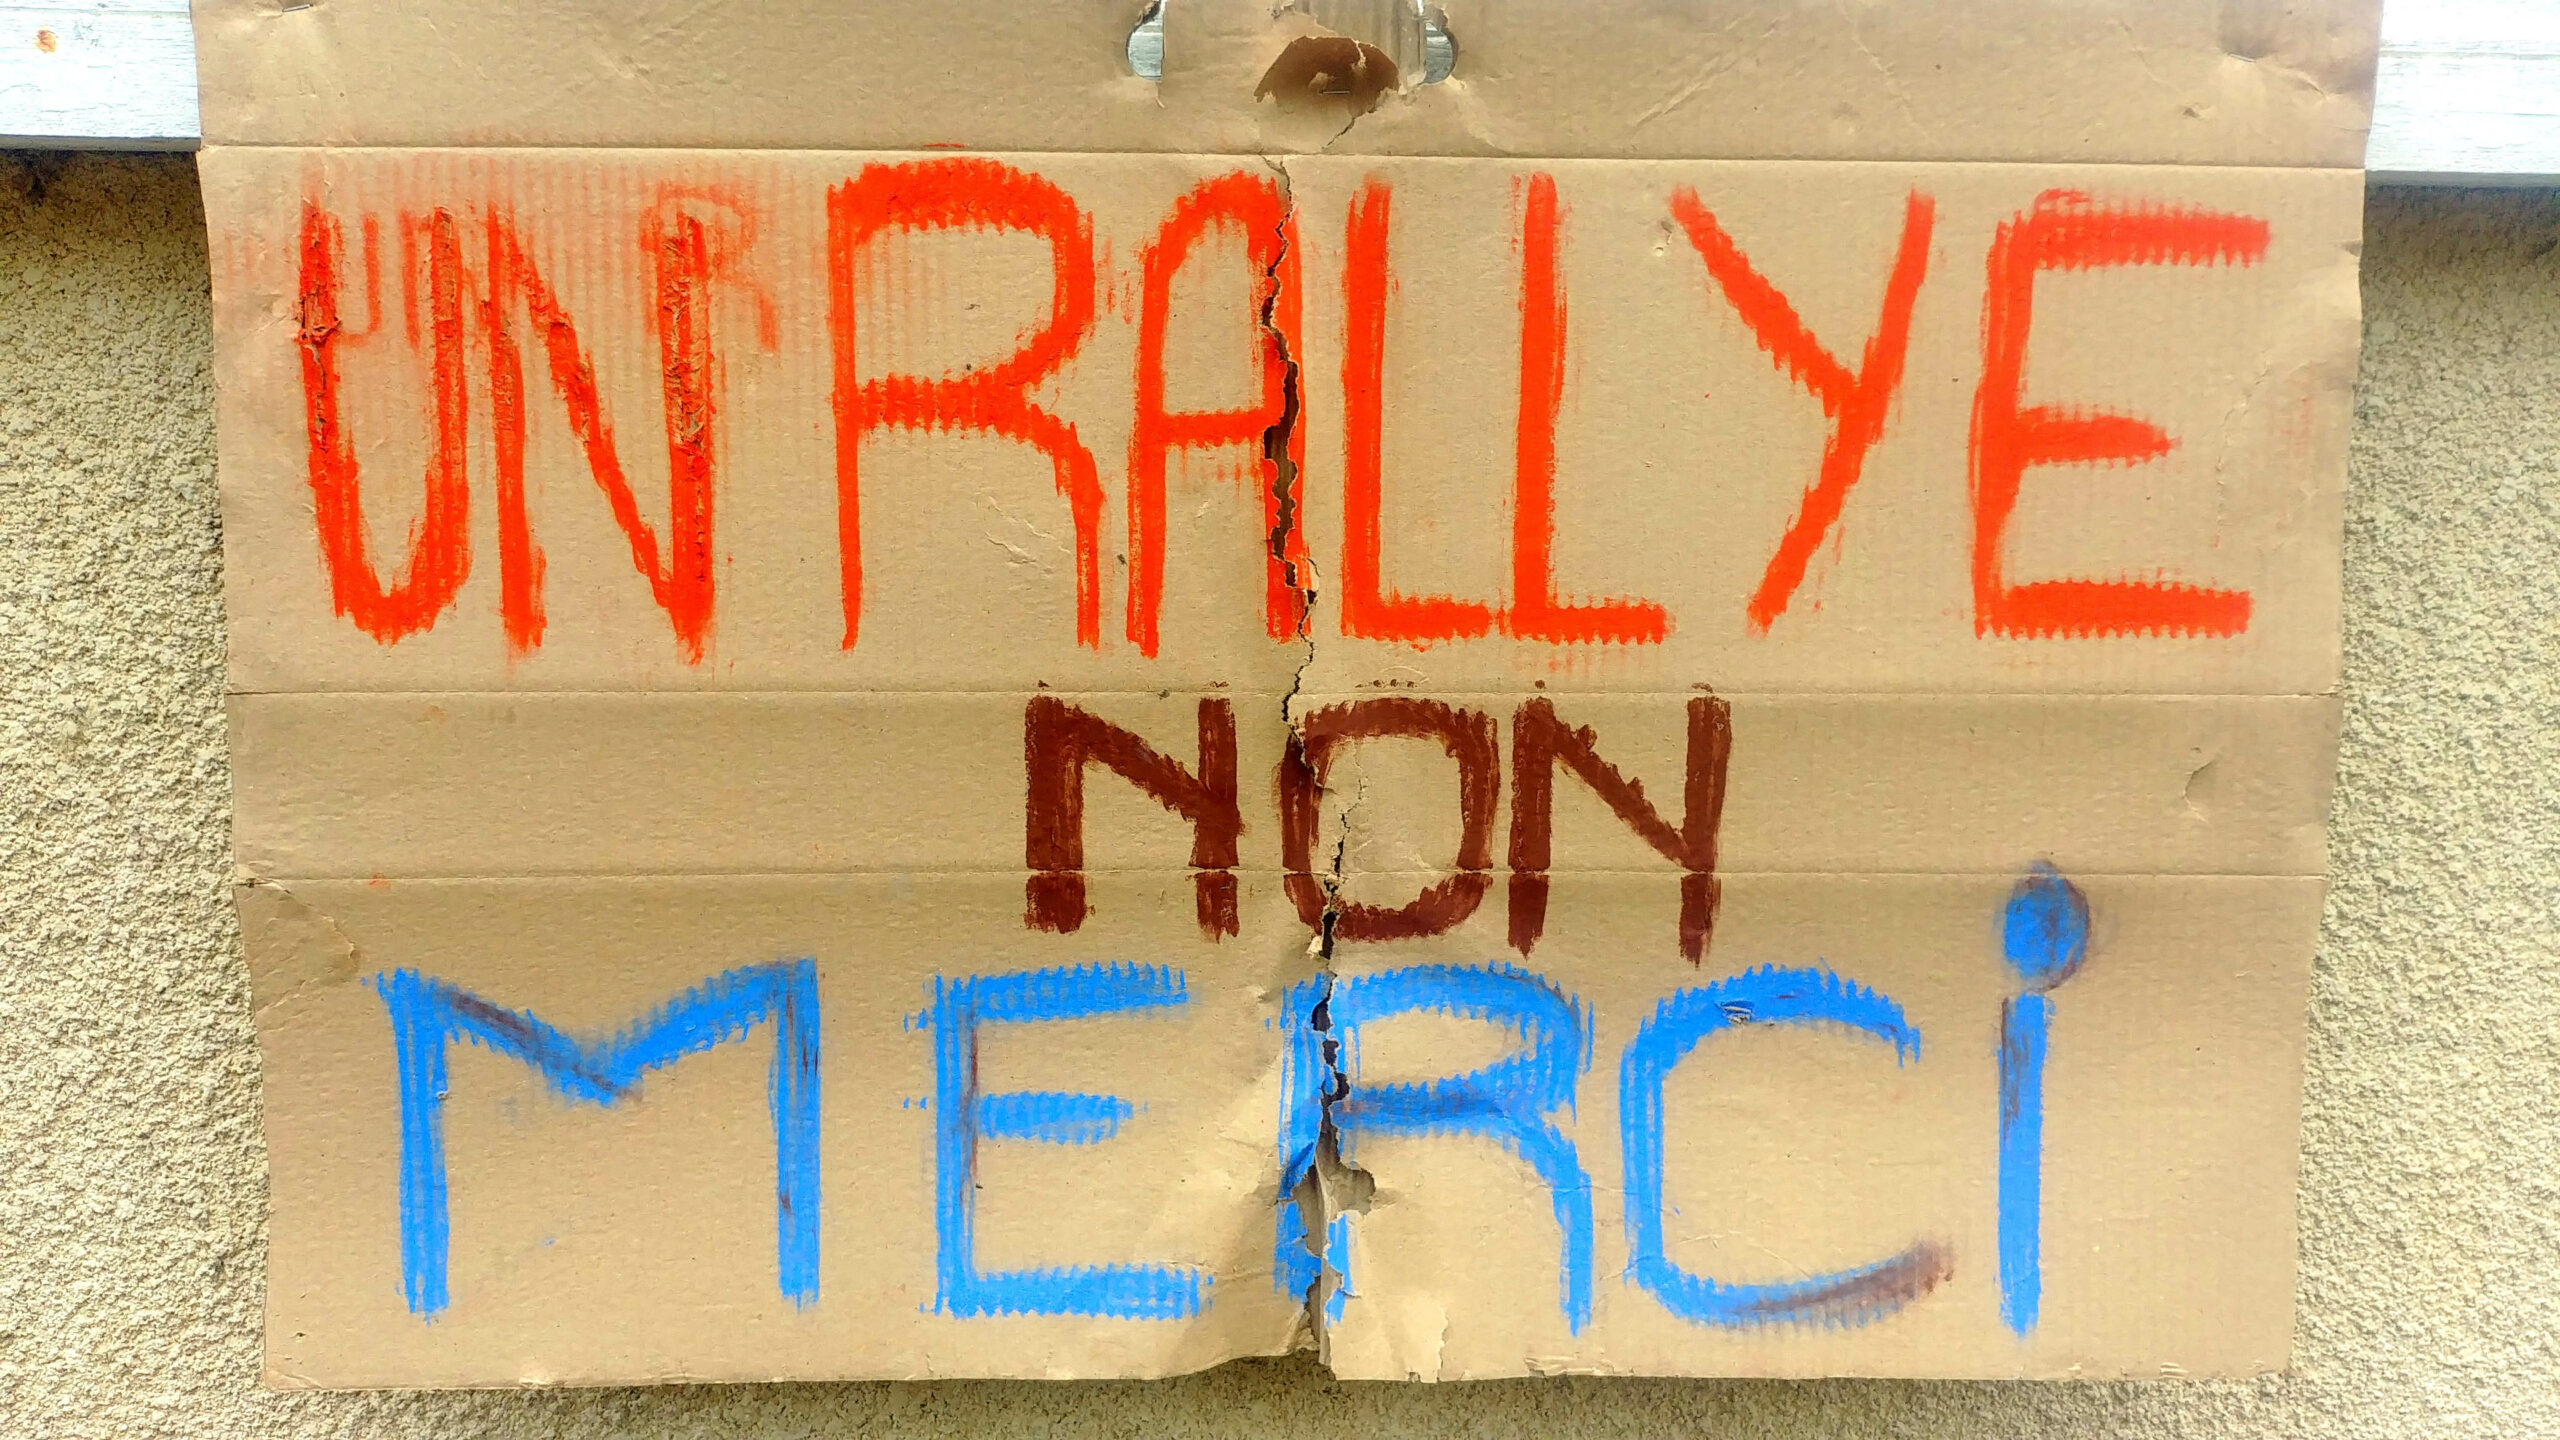 un rallye non merci : rallye des castines à Branceilles